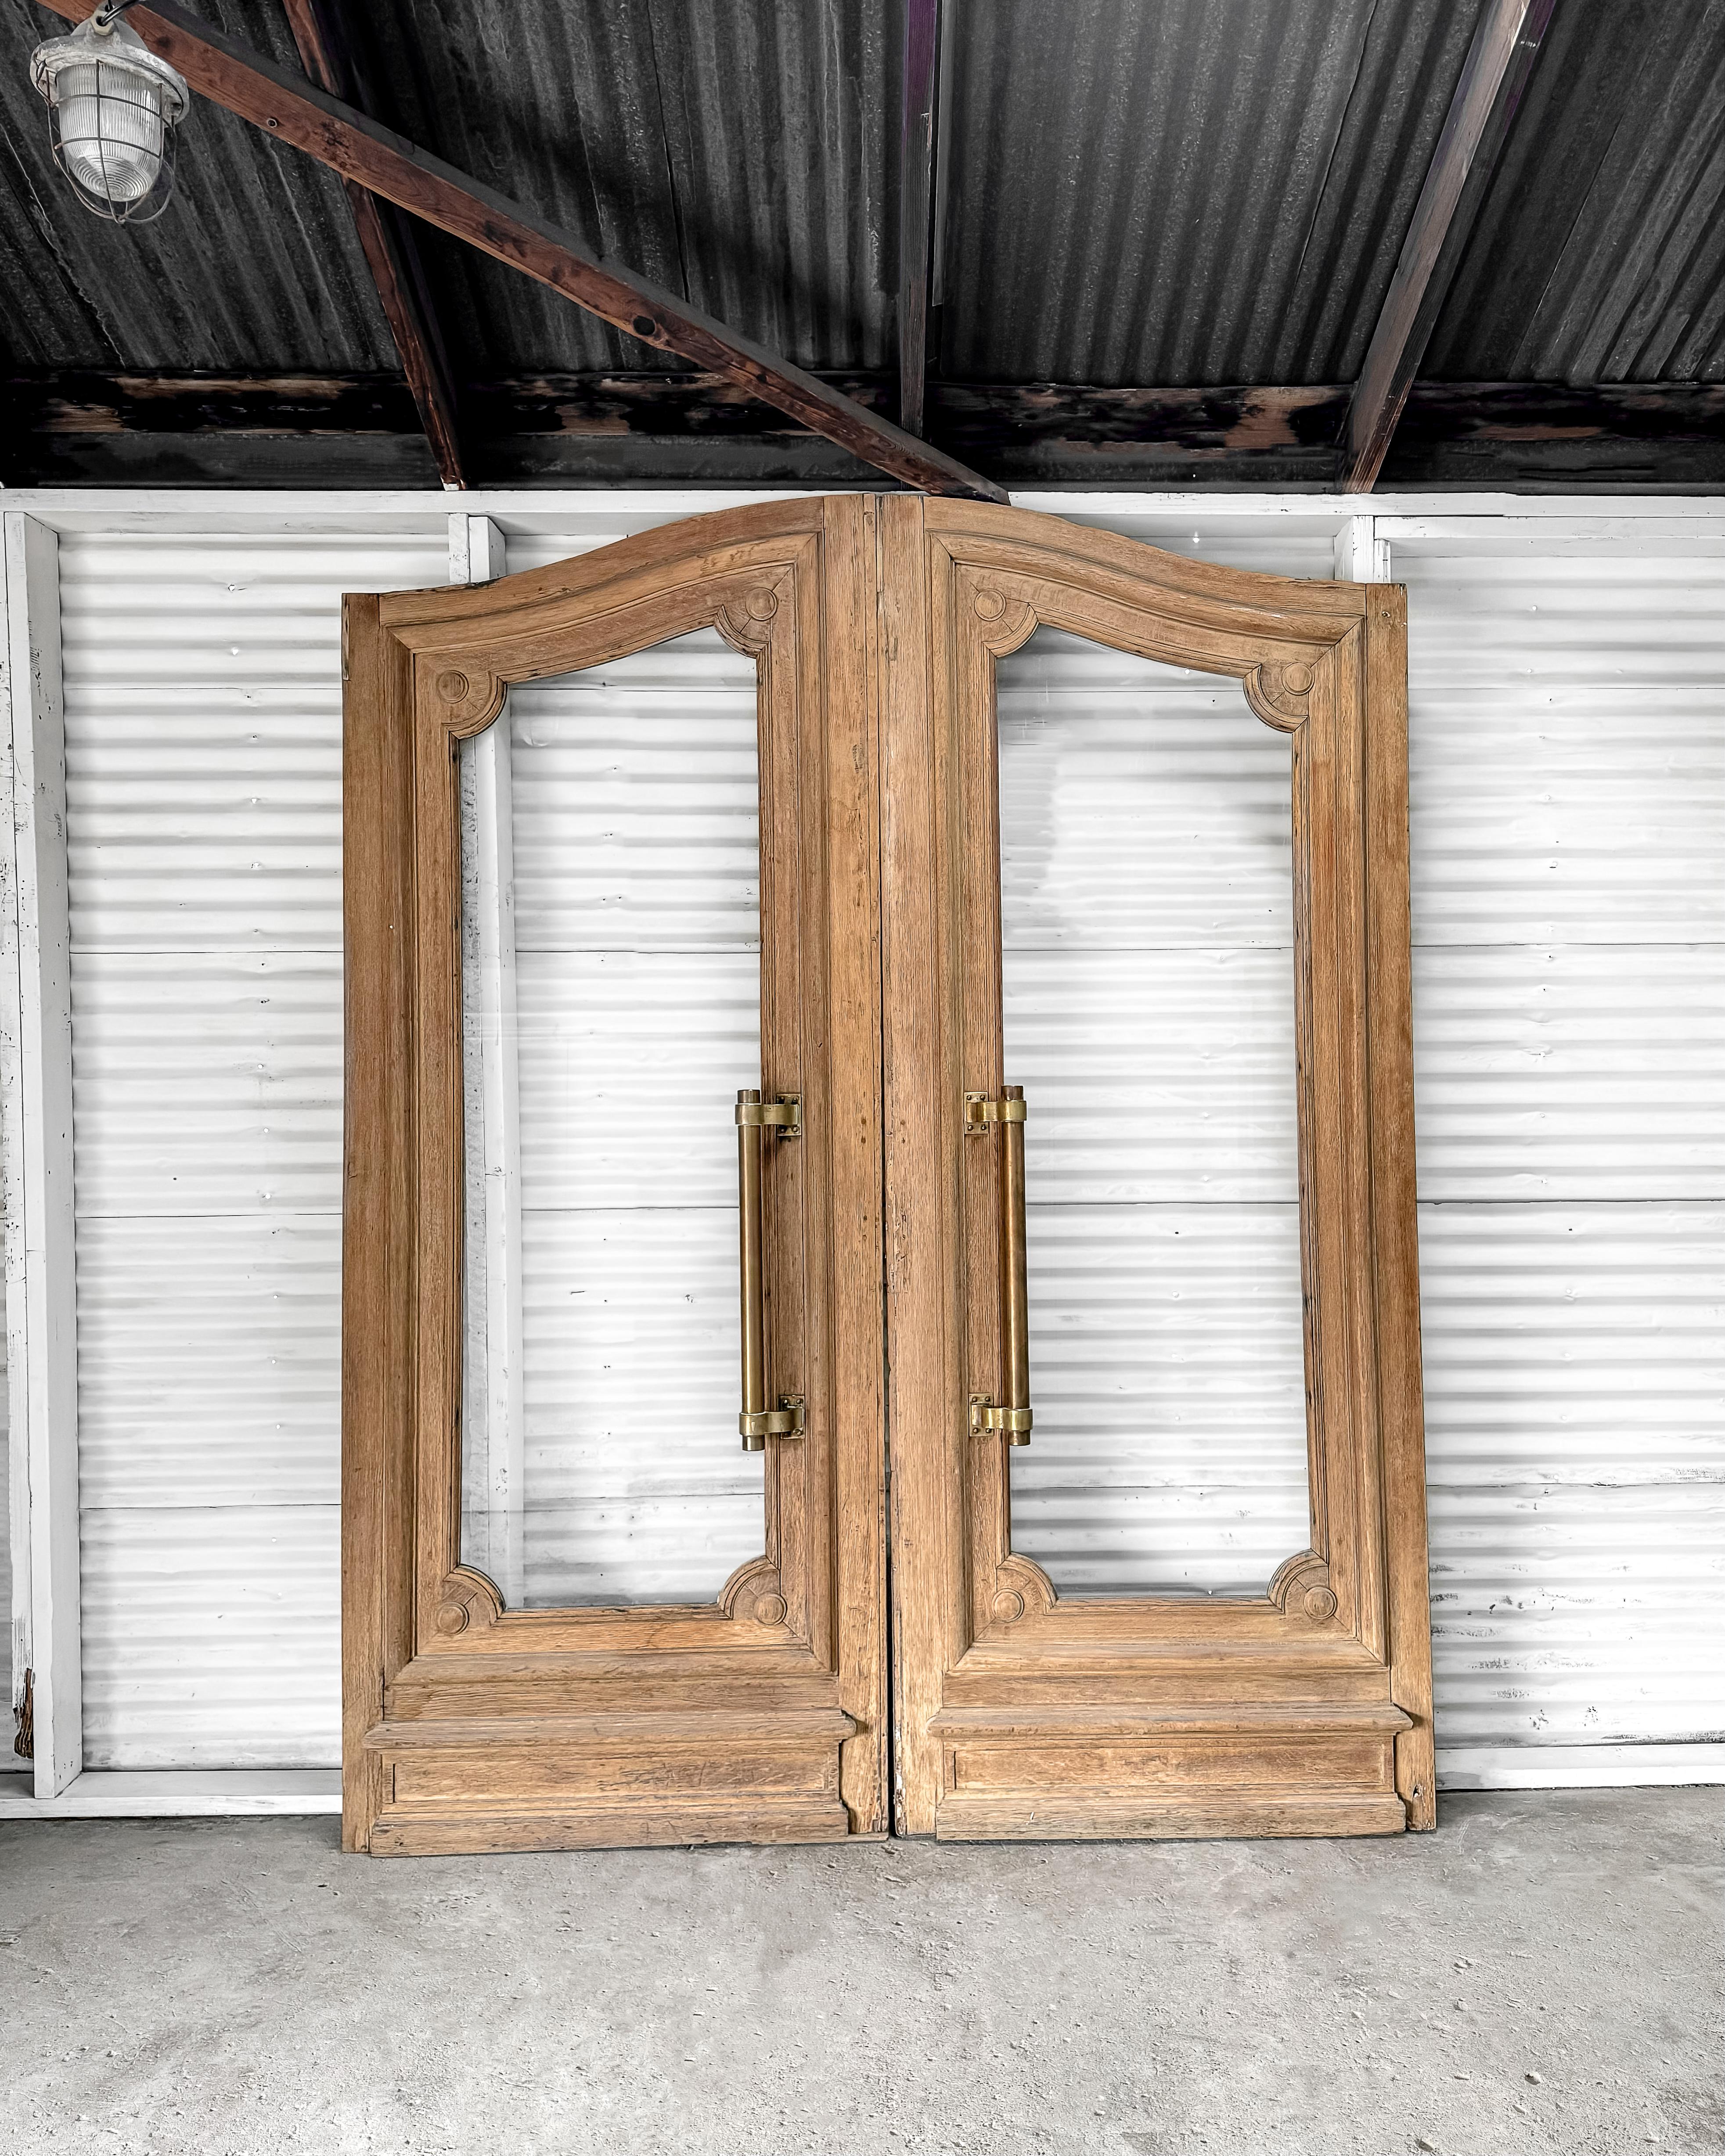 Ein beeindruckendes Paar geborgener Außentüren aus einem Bankgebäude in Frankreich mit einer anmutigen, gewölbten Oberseite und einer natürlichen Holzoberfläche. Jede Tür hat ein einzelnes durchgehendes Fenster, das von einer abgeschrägten Leiste